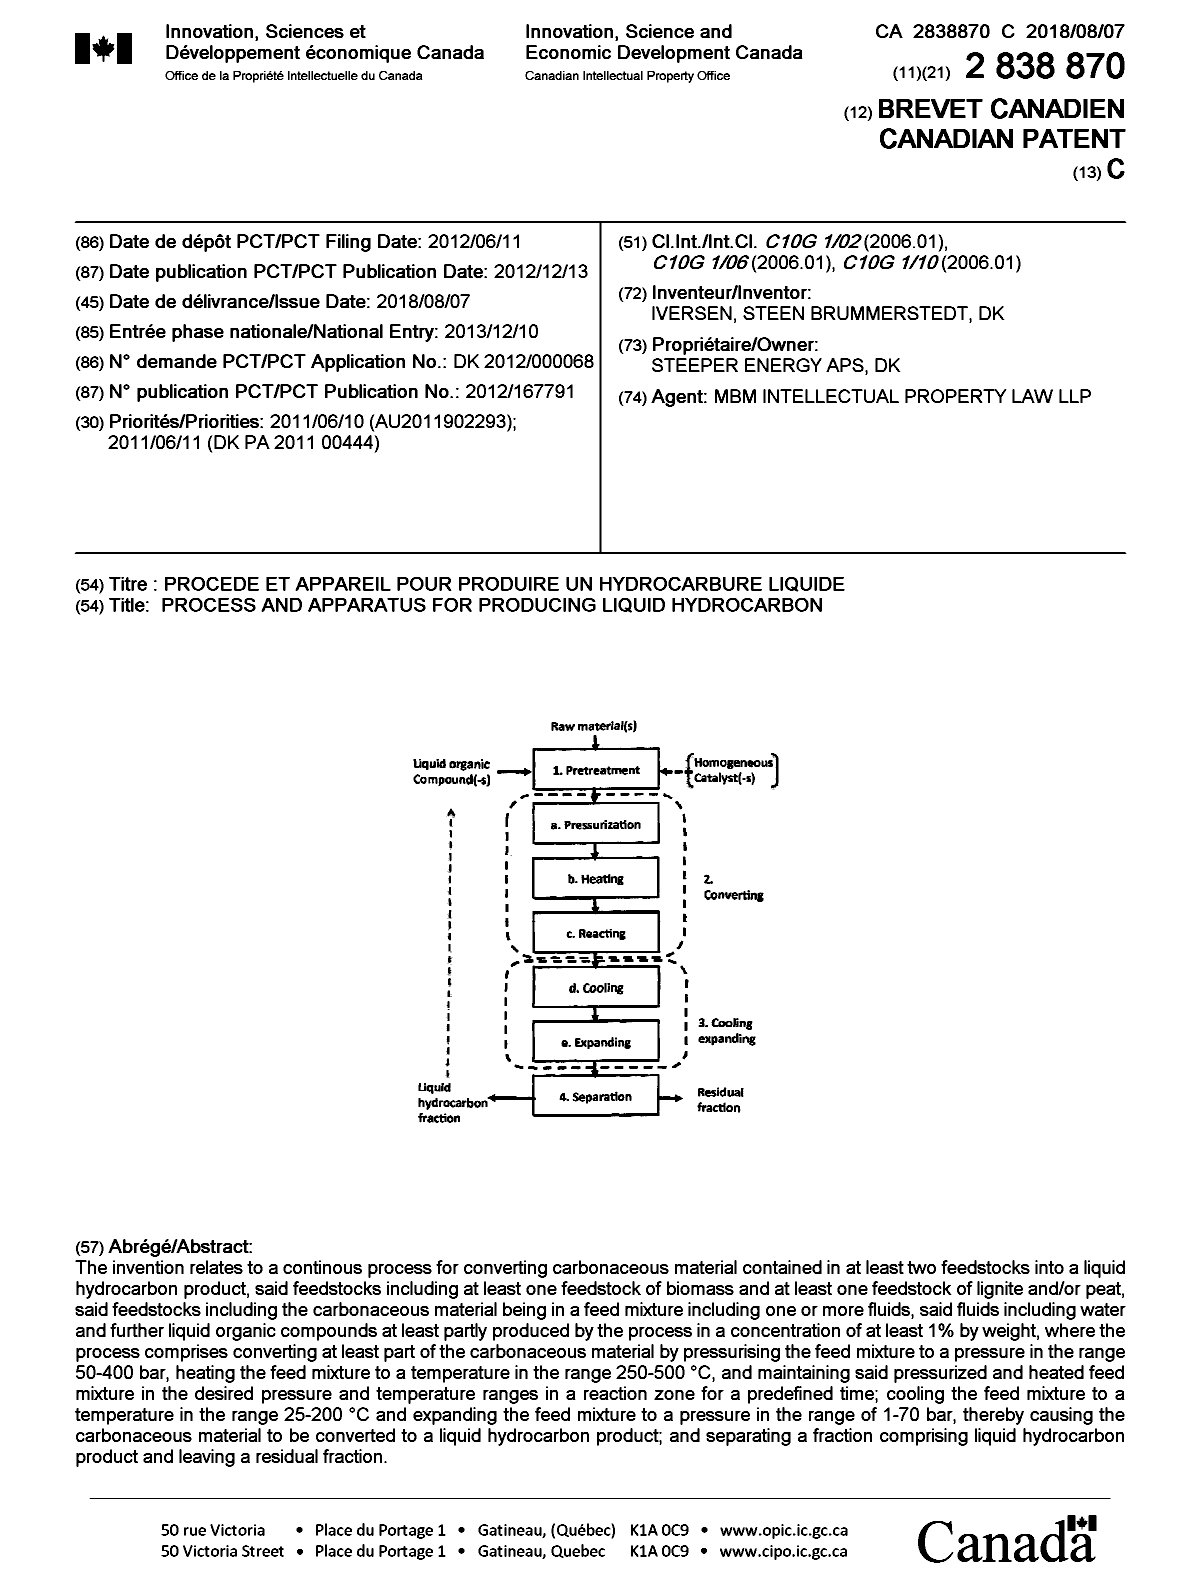 Document de brevet canadien 2838870. Page couverture 20180710. Image 1 de 1